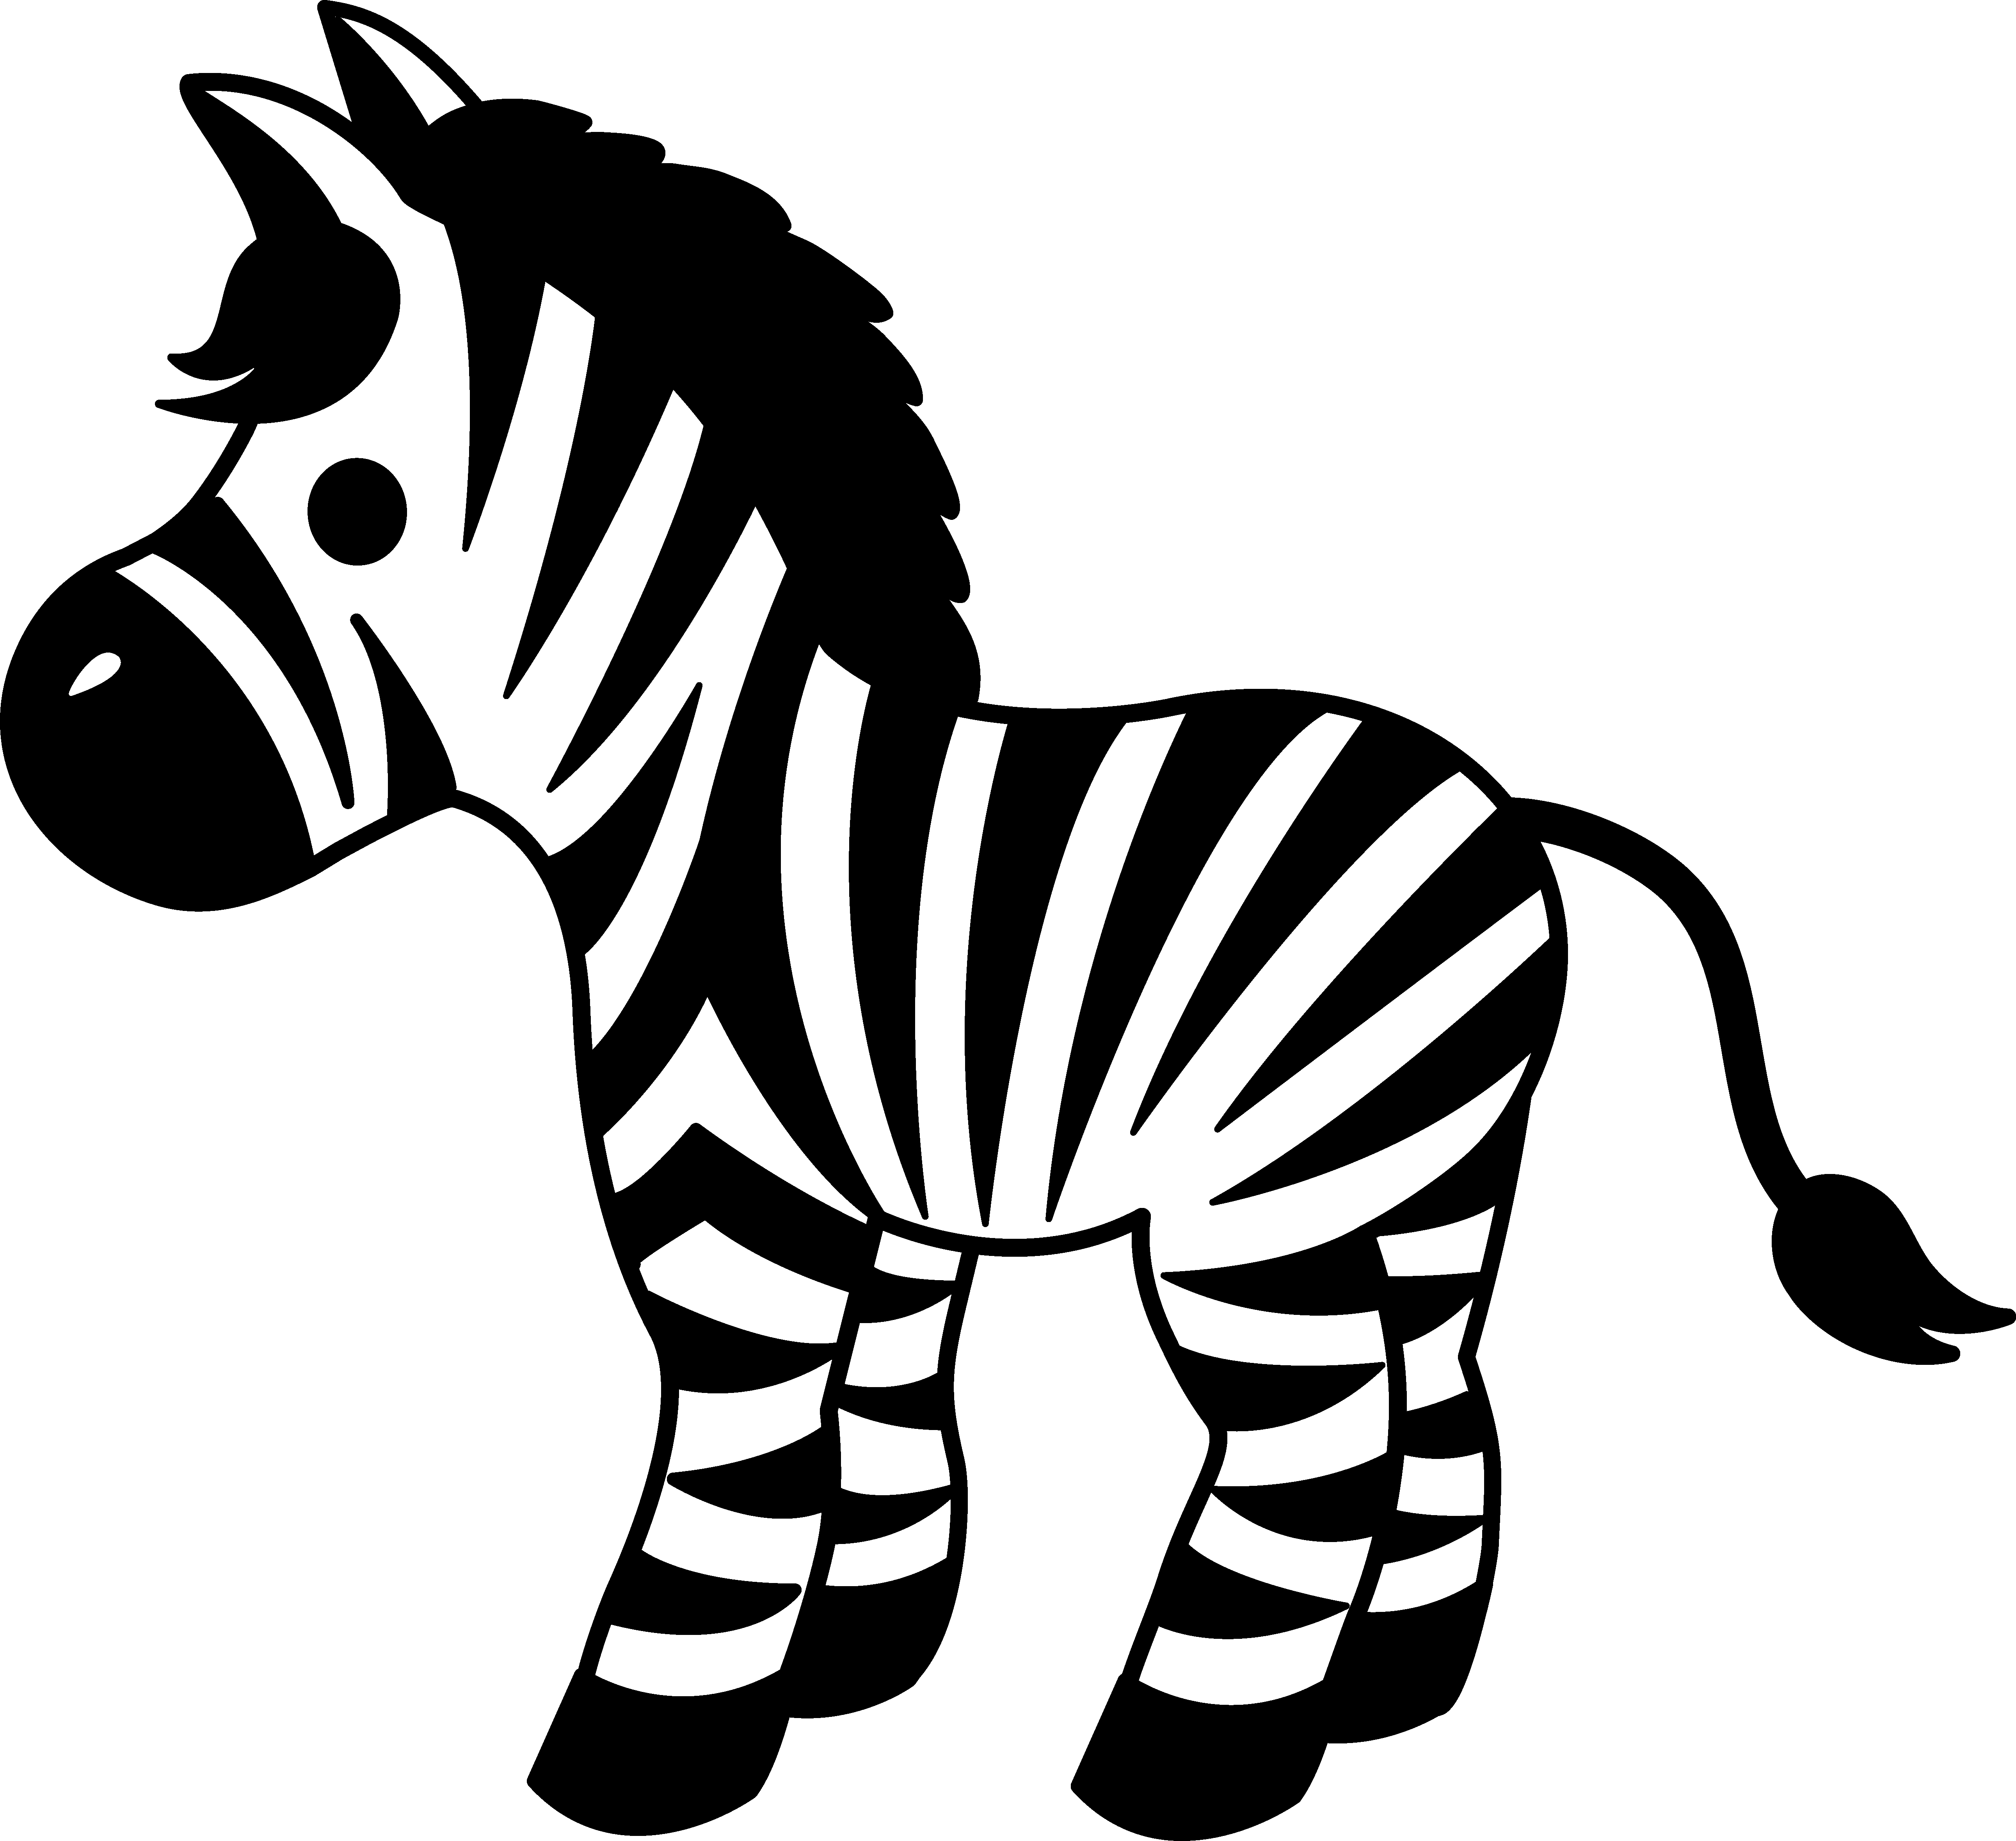 Zebra stripes clipart